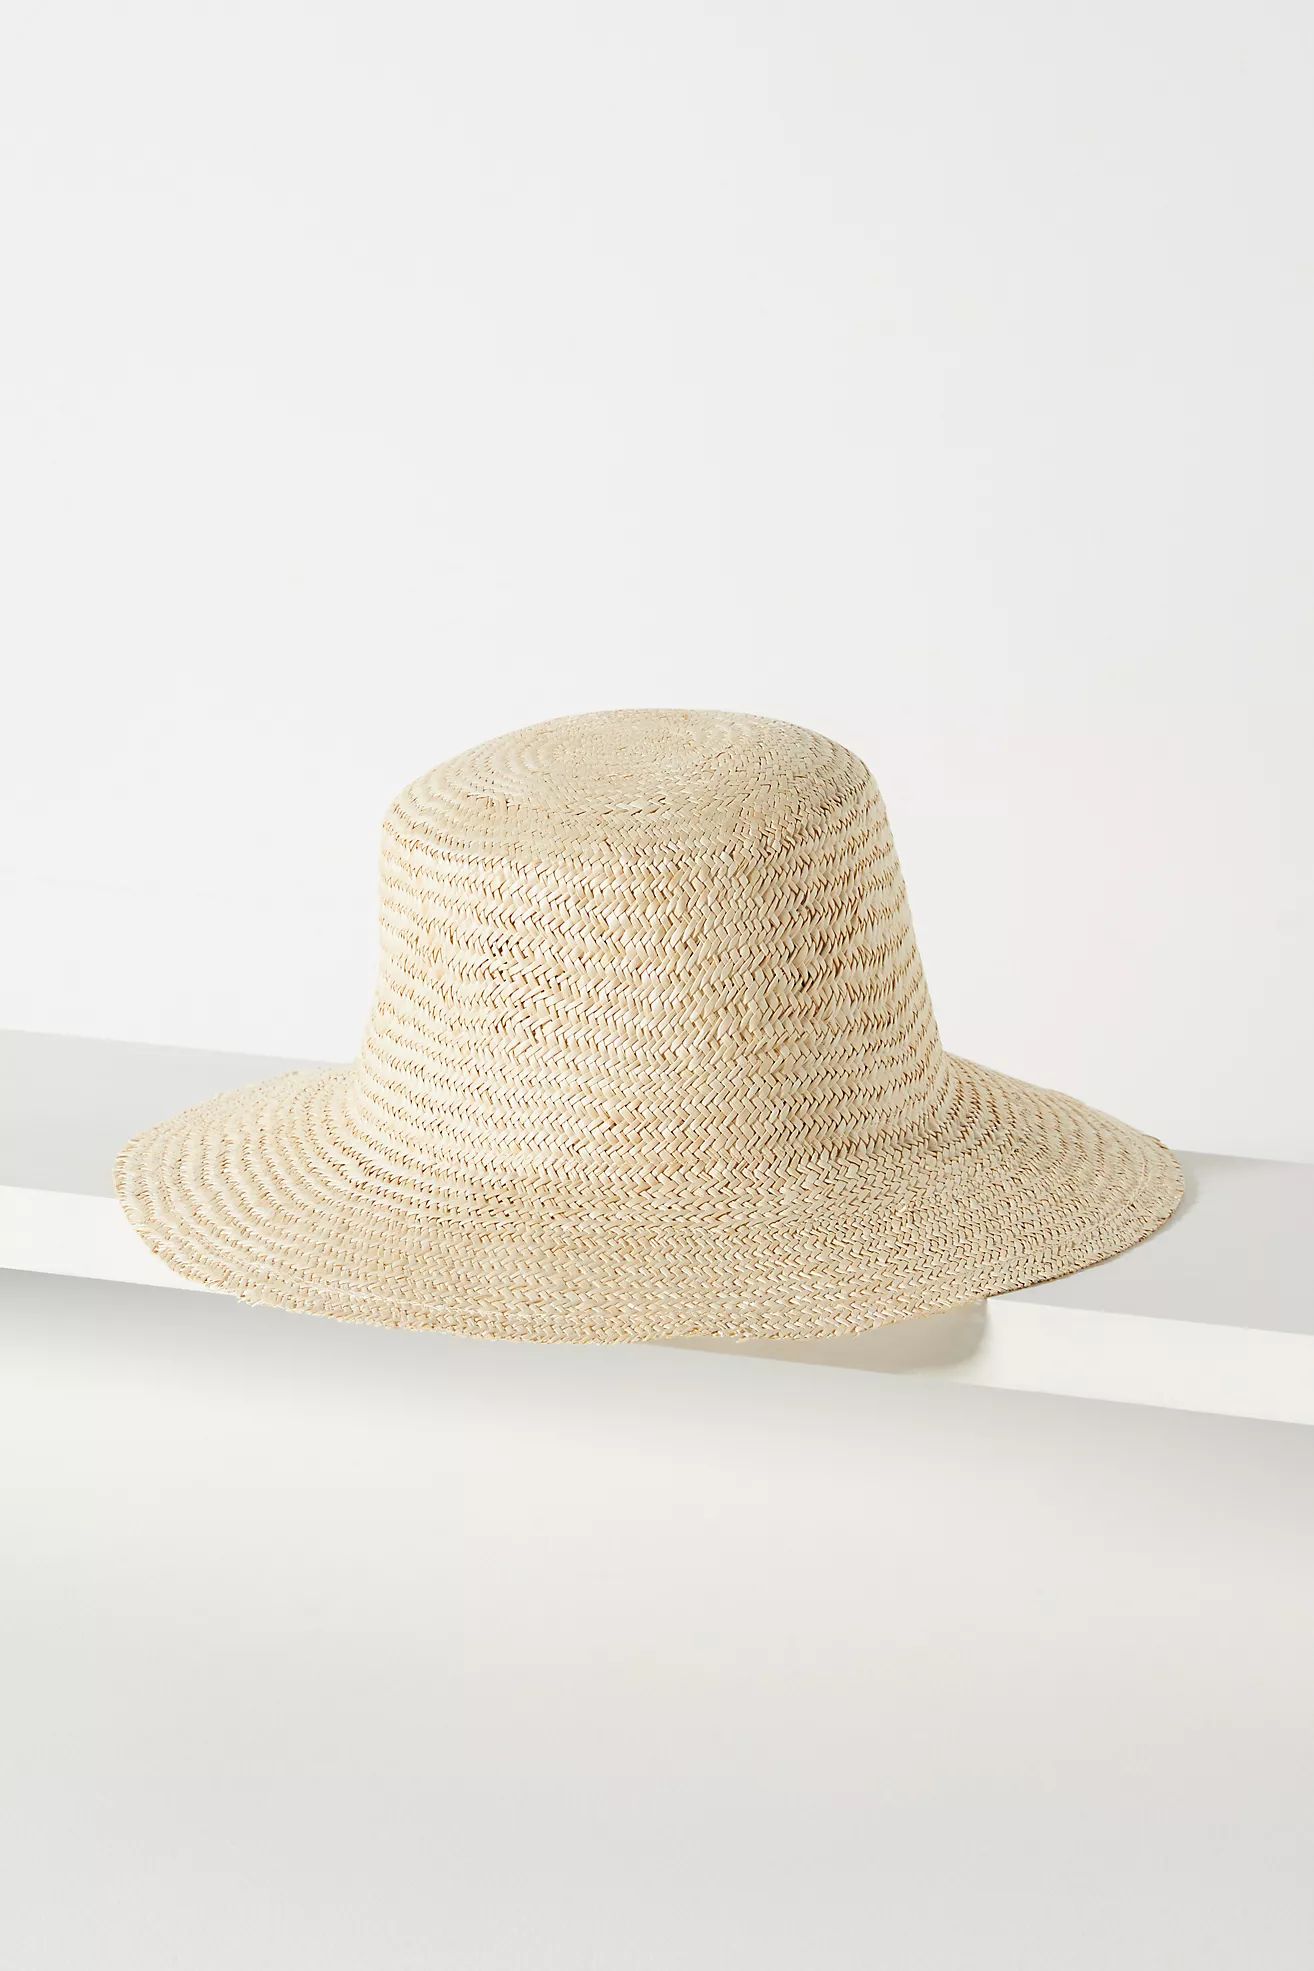 San Diego Hat Co. Straw Bucket Hat | Anthropologie (US)